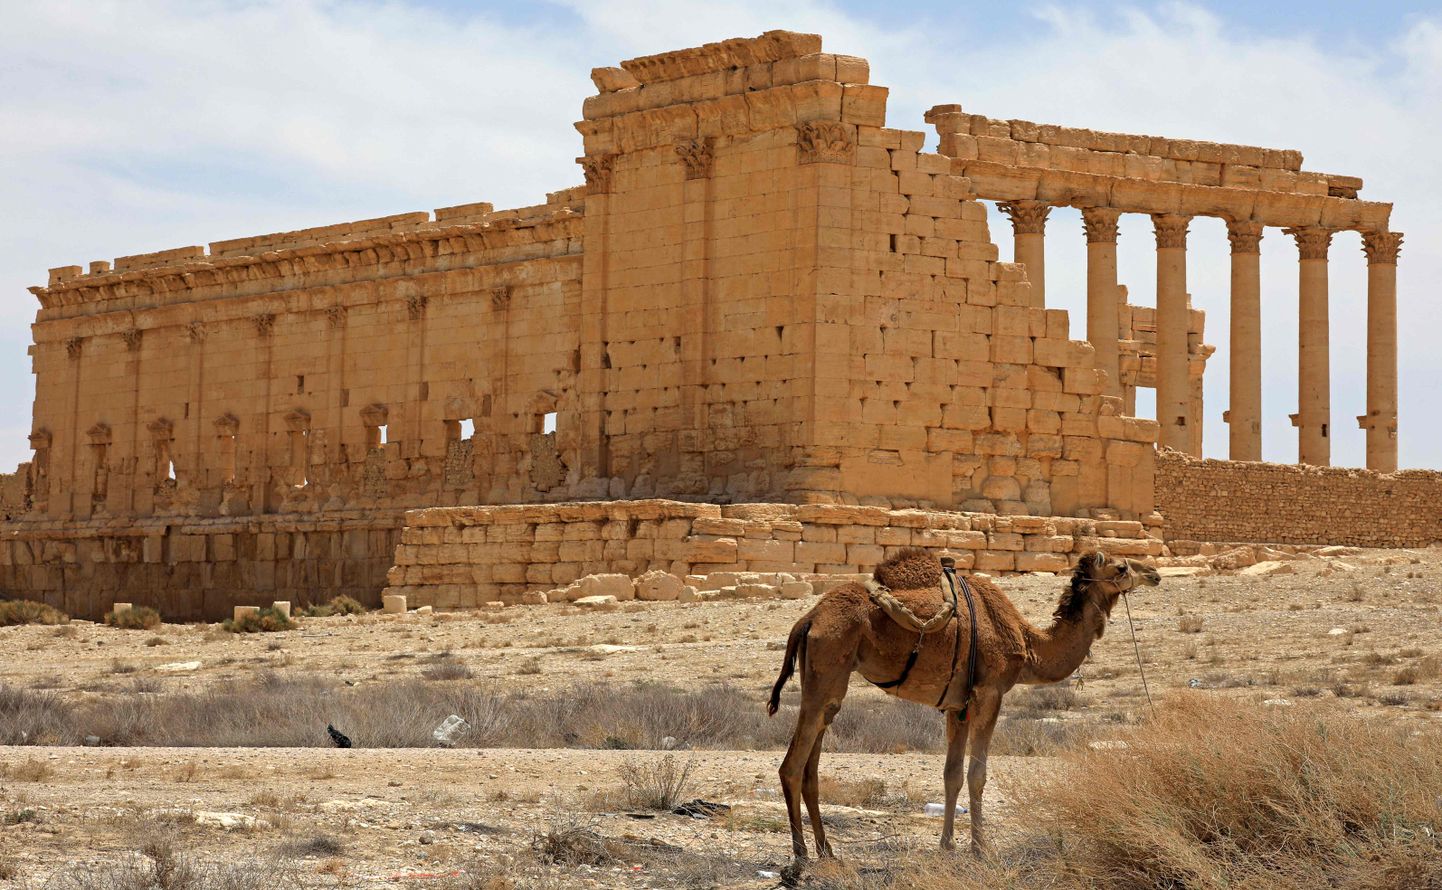 Senā Palmīra